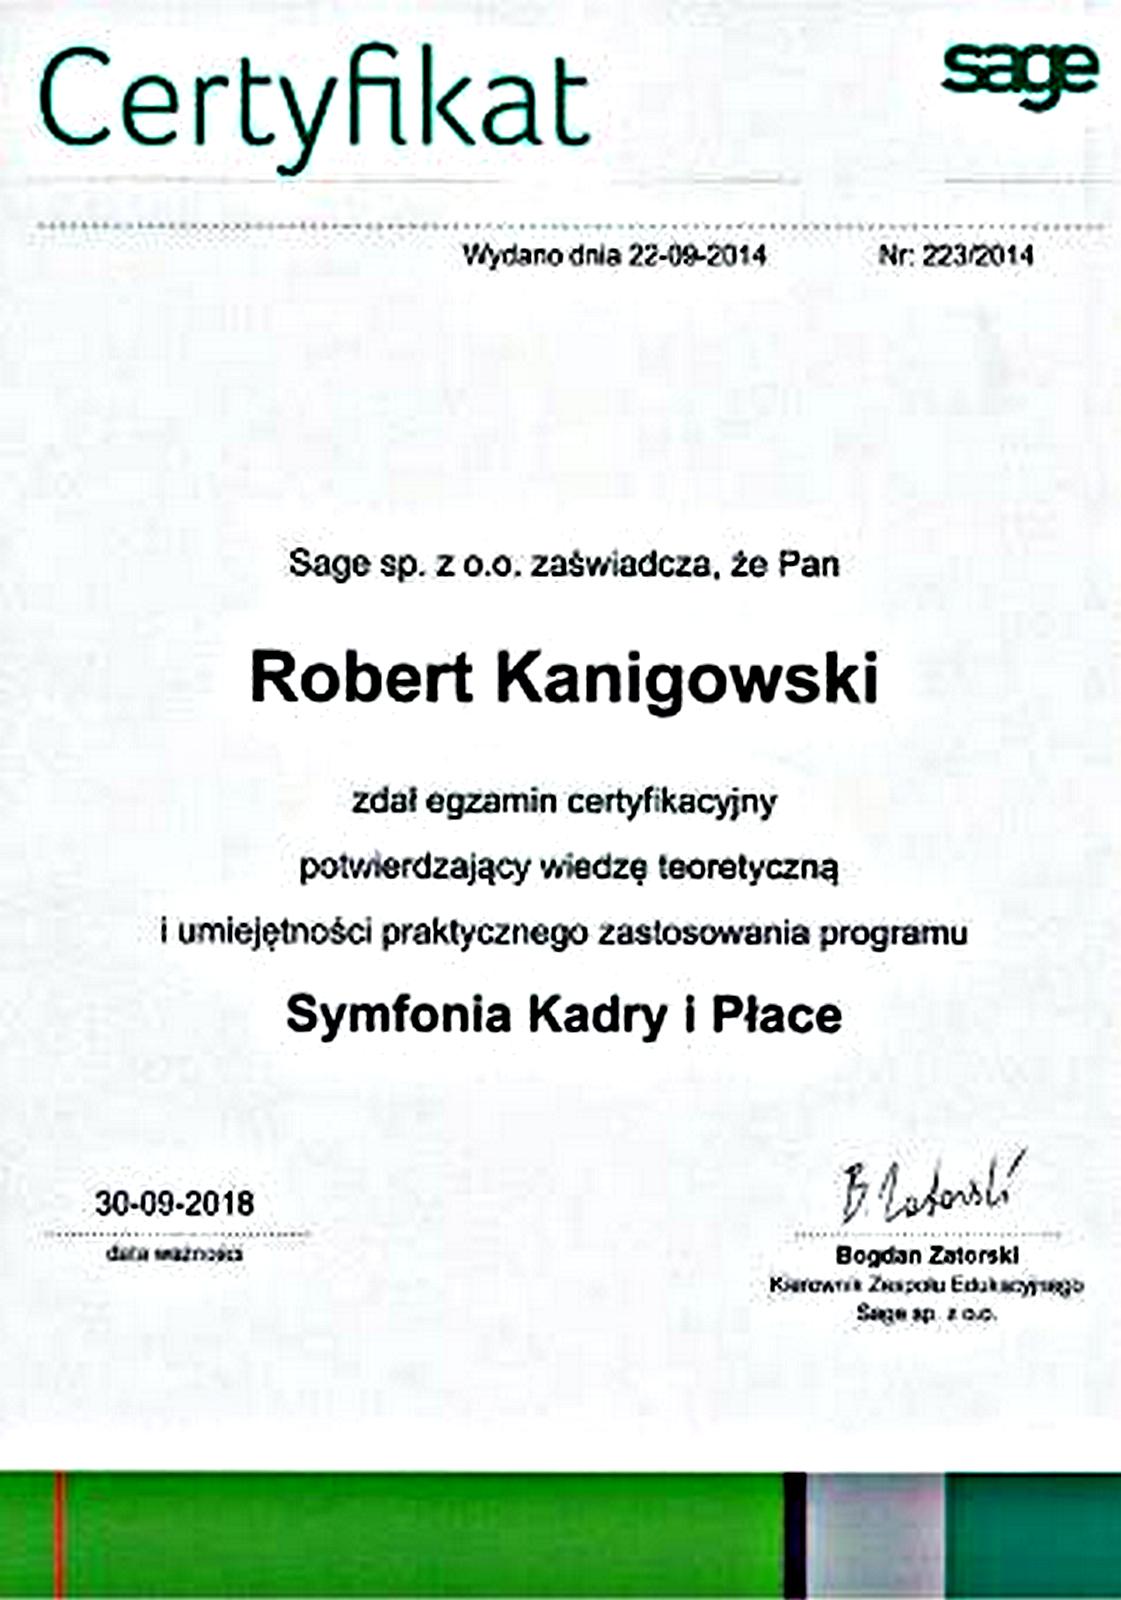 Potwierdzenie zadania egzaminu certyfikacyjnego Symfonia Kadry i Płace Robert Kanigowski